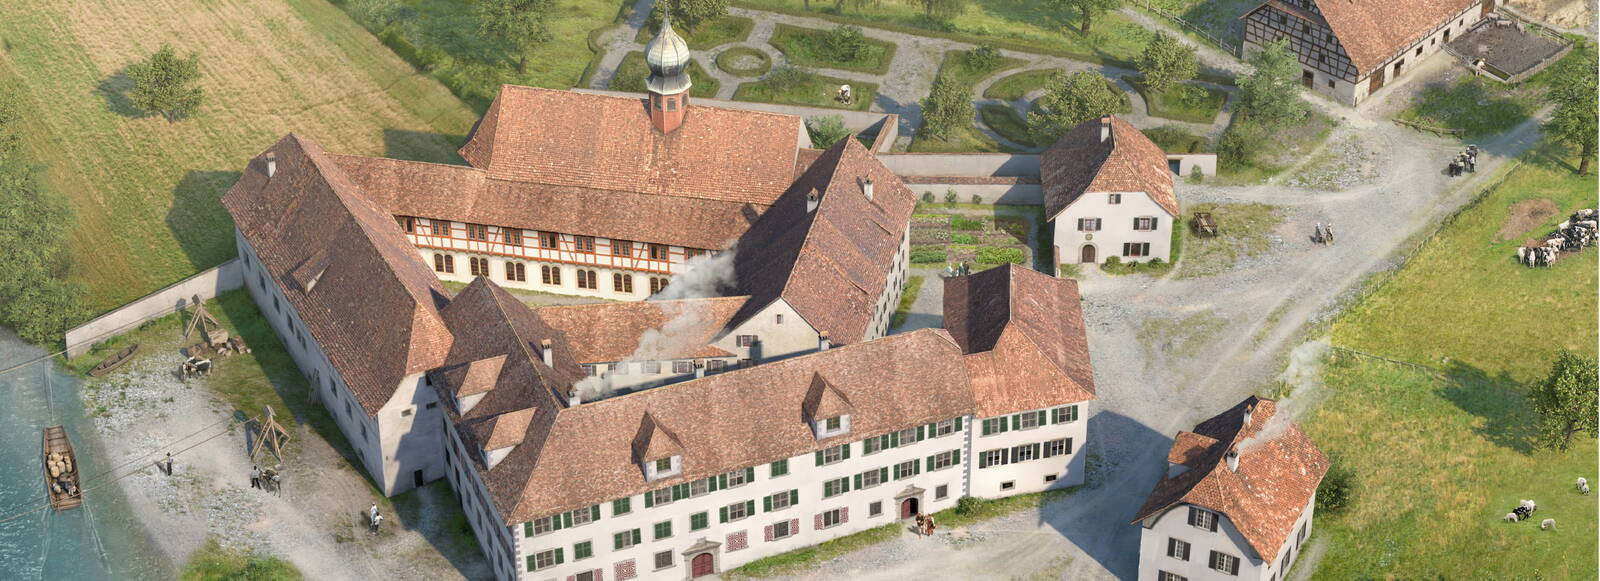 eine Illustration zeigt eine Übersicht des Klosterareals Gnadenthal